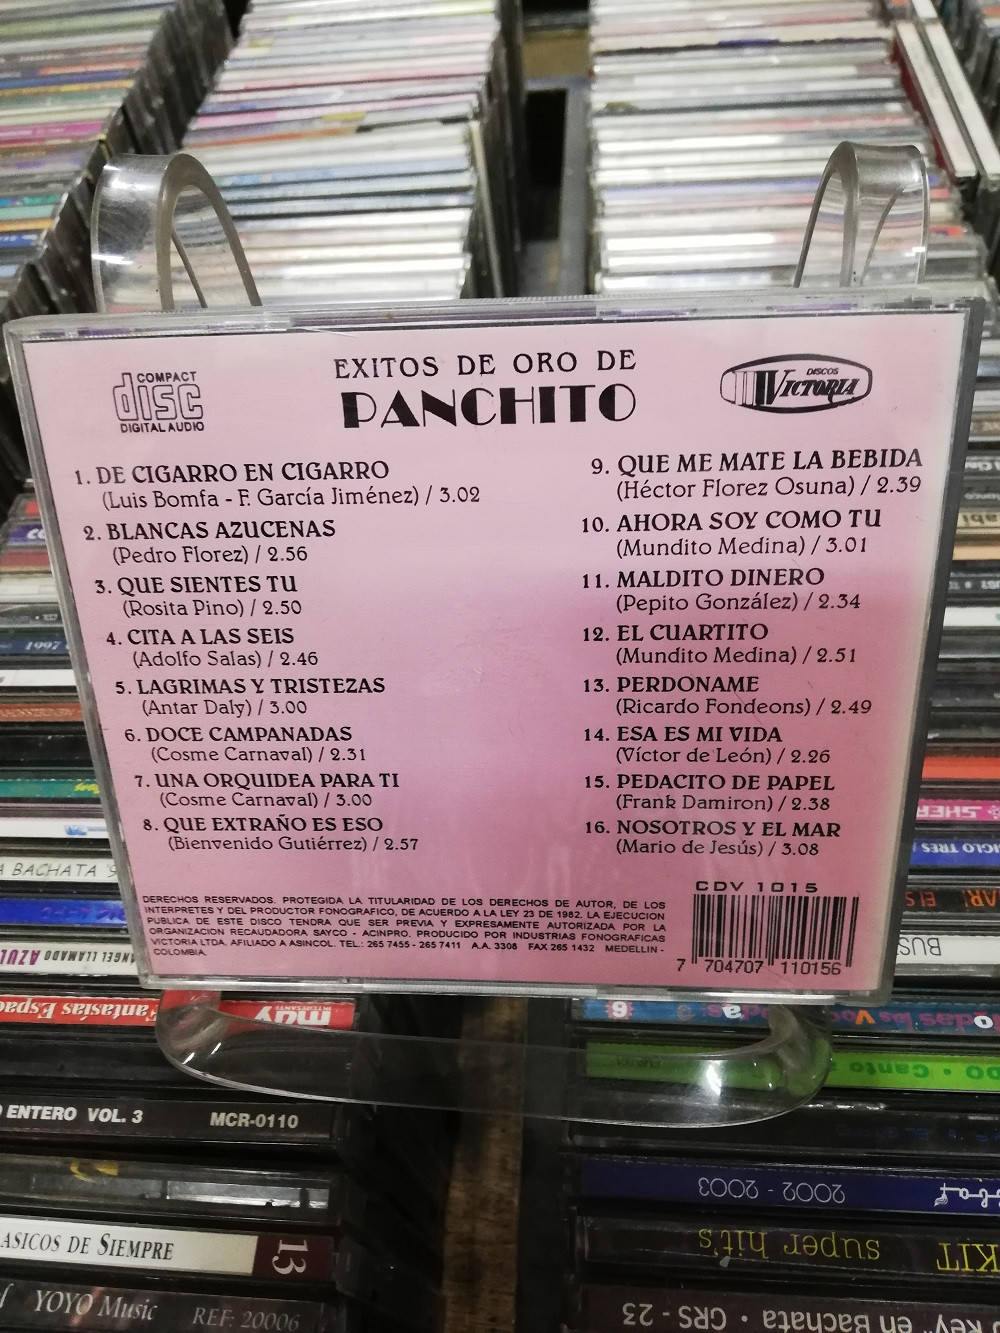 Imagen CD PANCHITO - EXITOS DE ORO 2